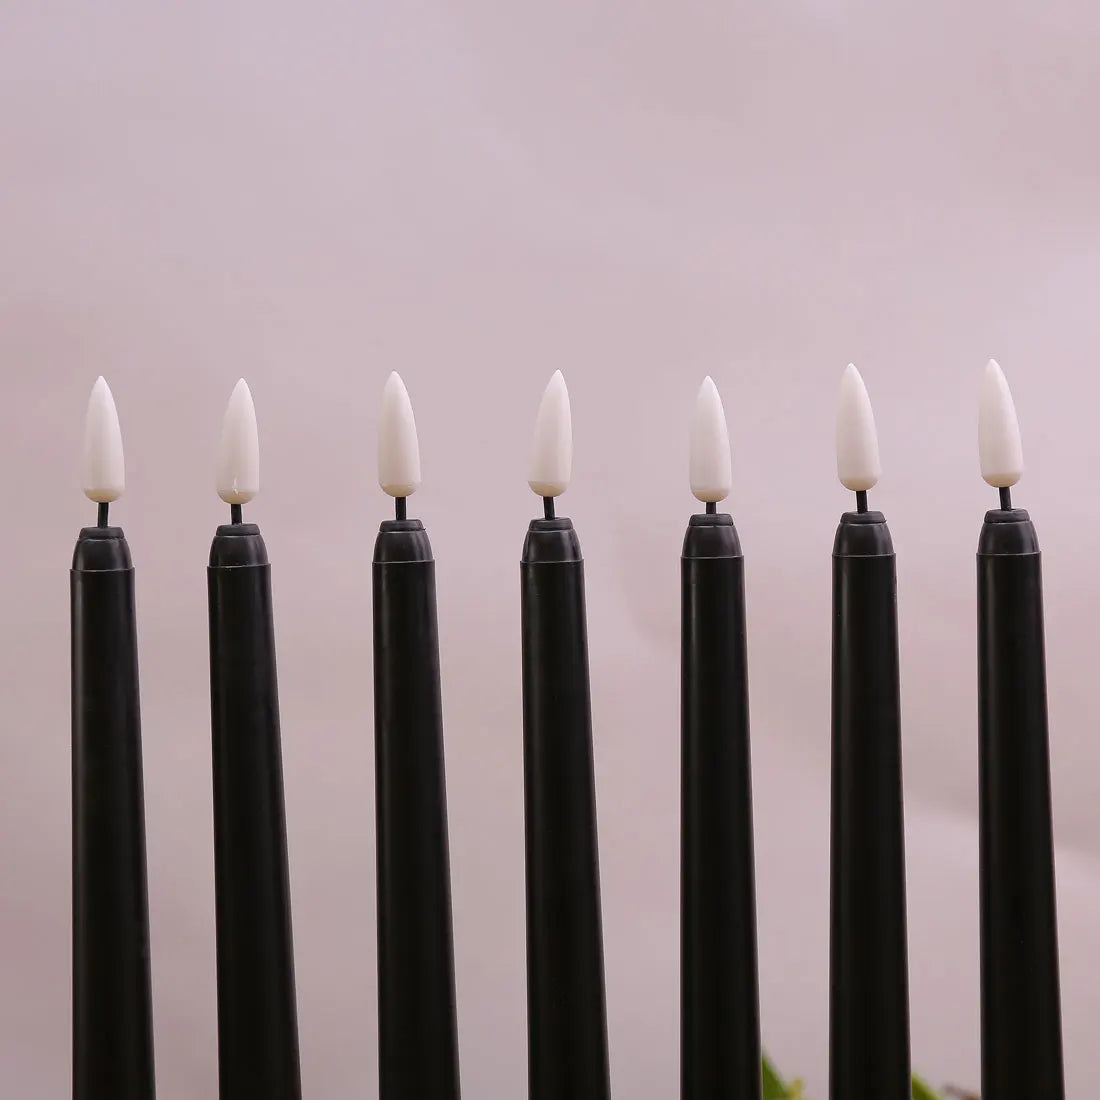 3 of 4 stuks 11 inch Halloween Black Flameless Led Taper kaarsen met geel/warm wit licht, batterijplastic nep LED -kaarsen